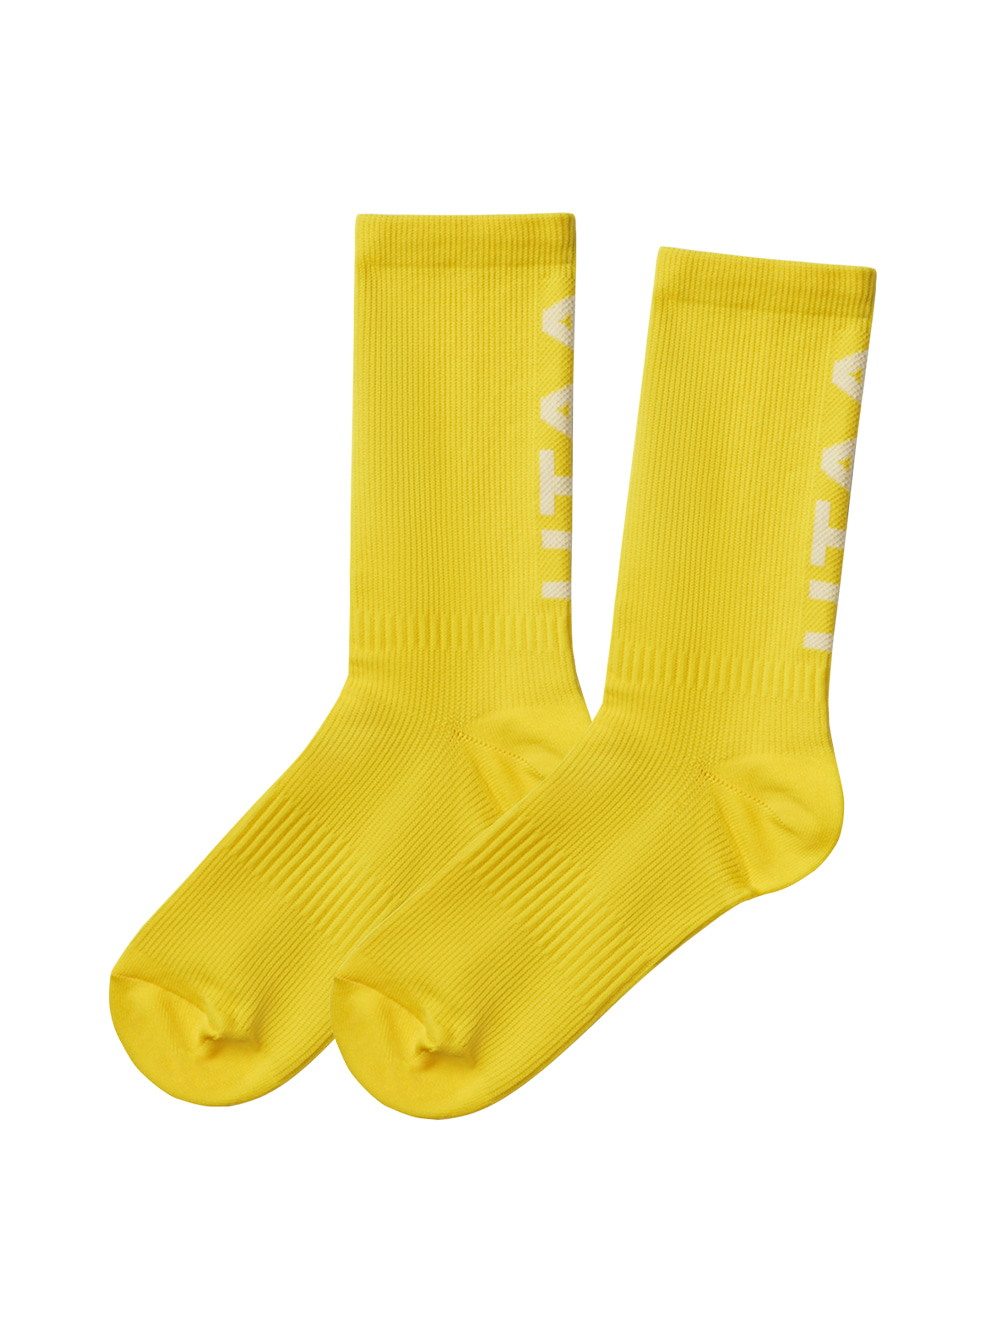 UTAA Logo Socks : Yellow(UC0GSF121YE)